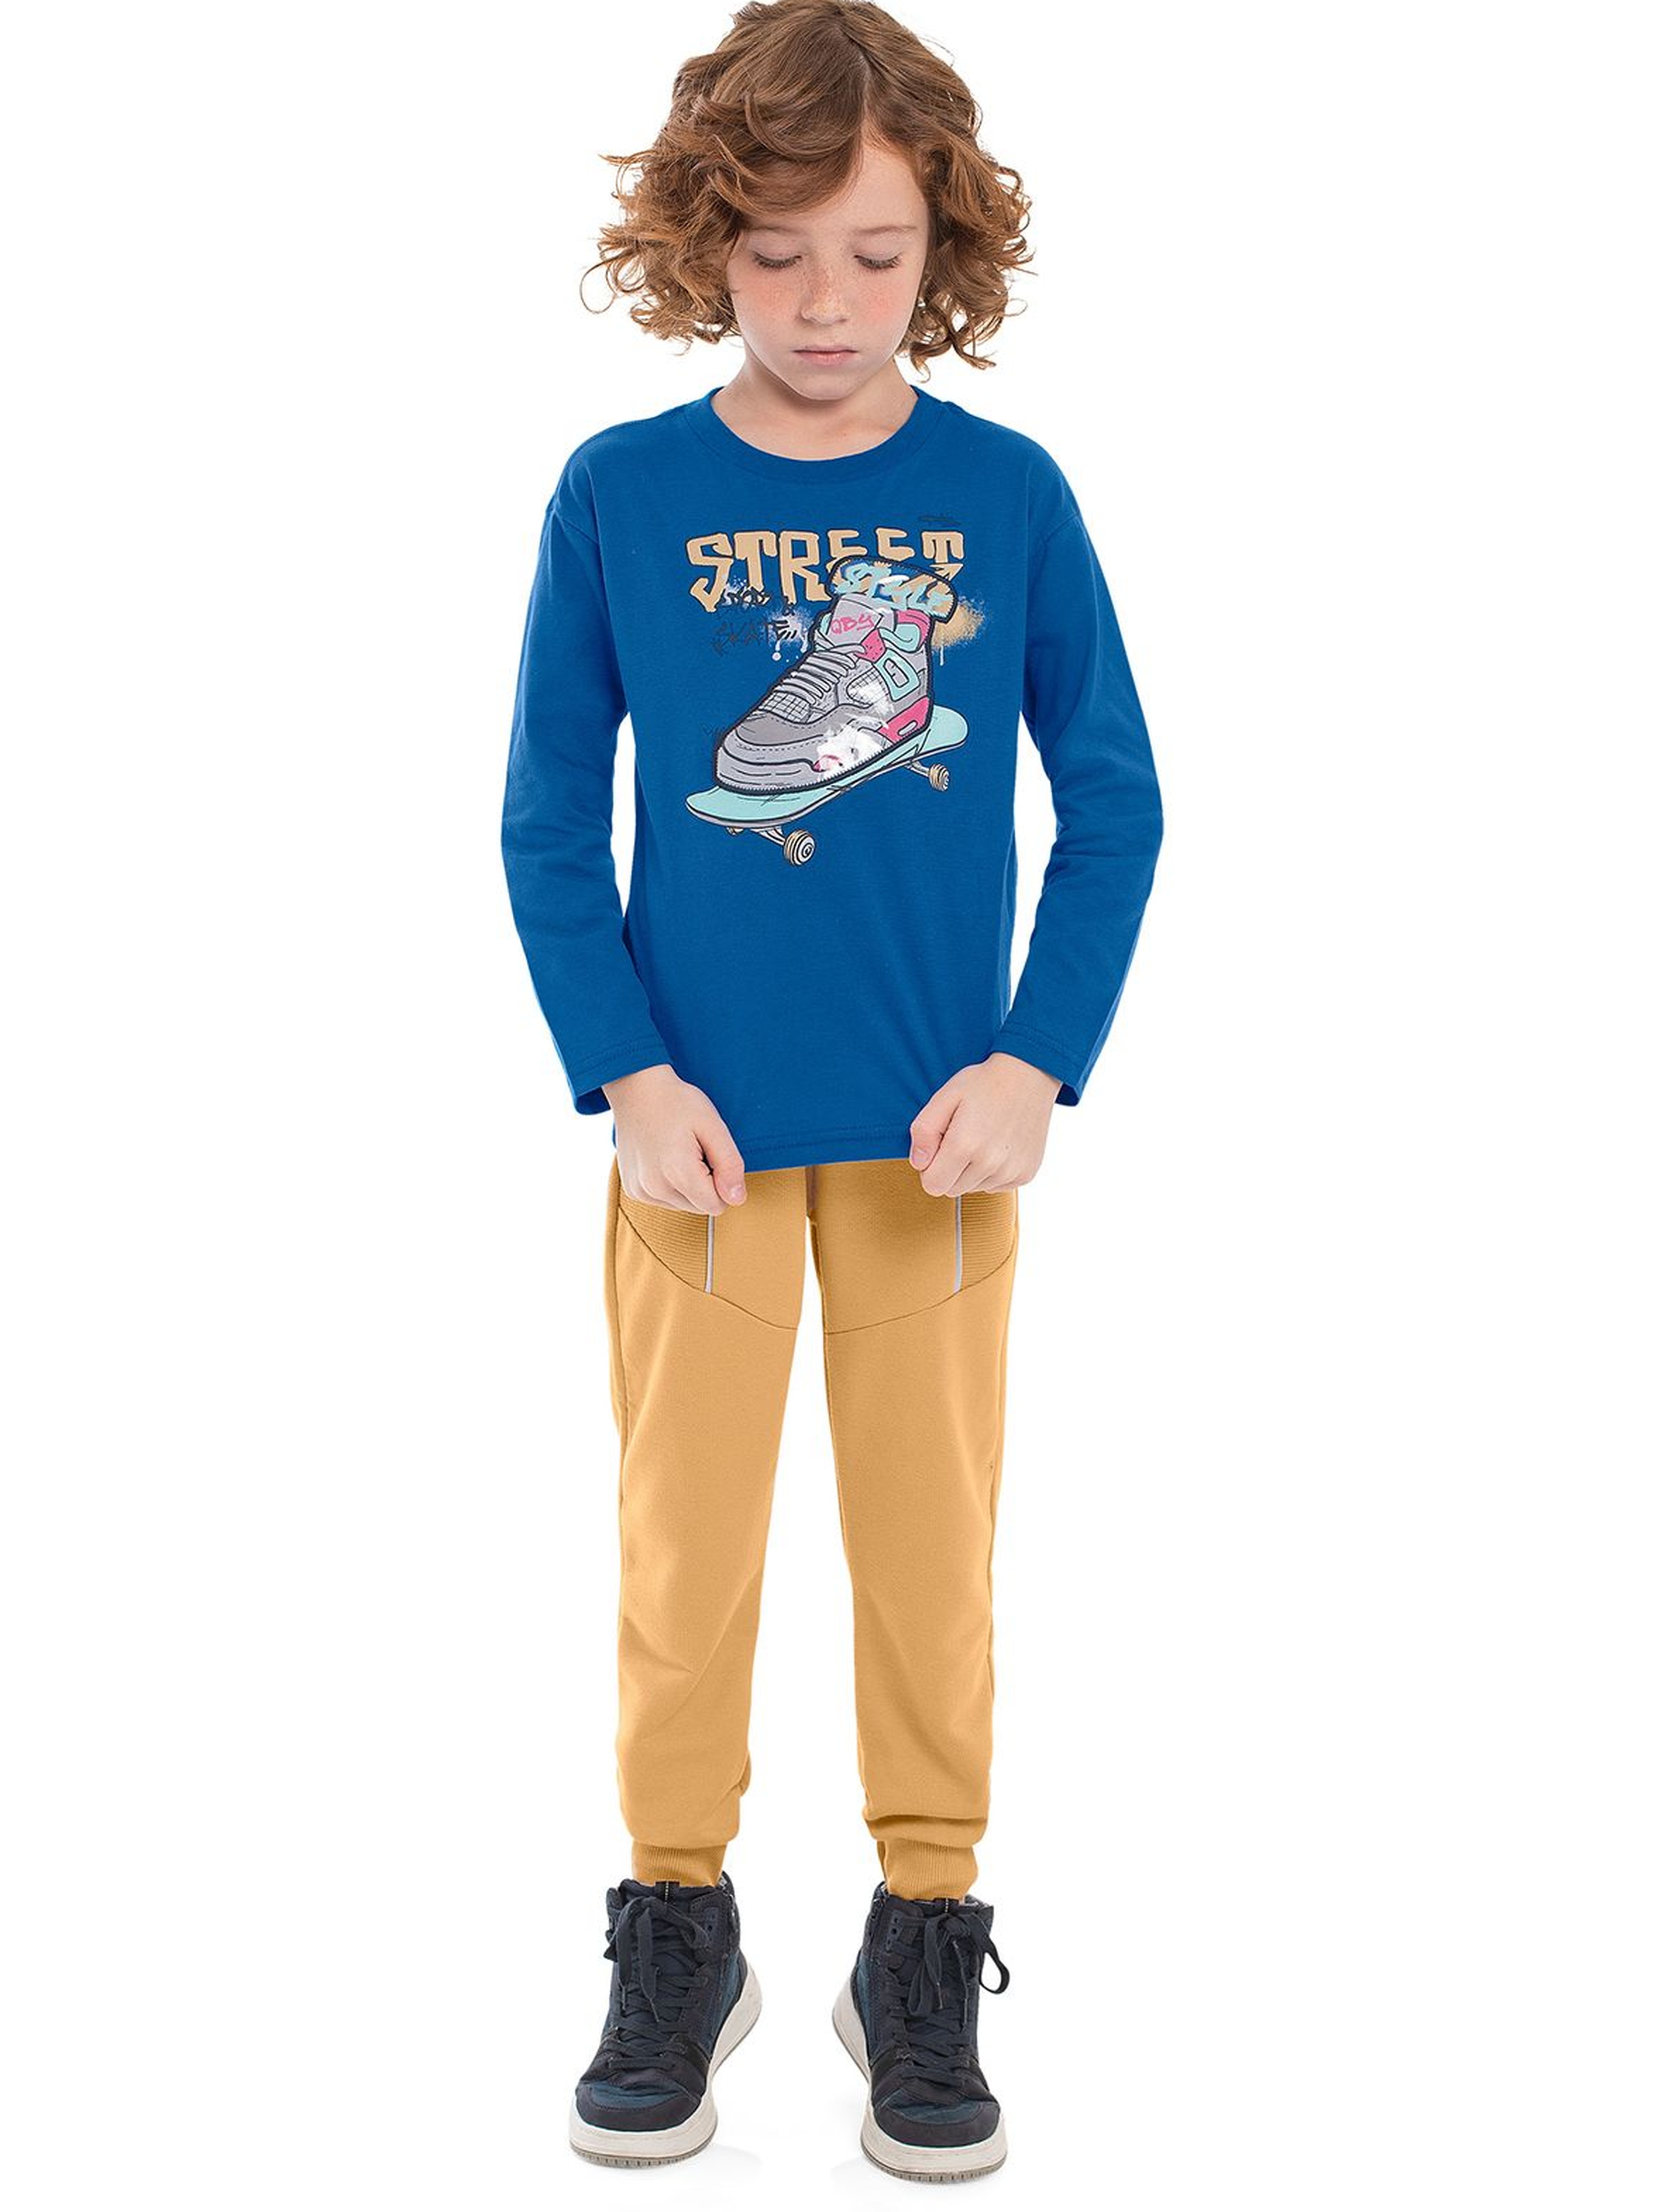 Bawełniana bluzka dla chłopca z nadrukiem